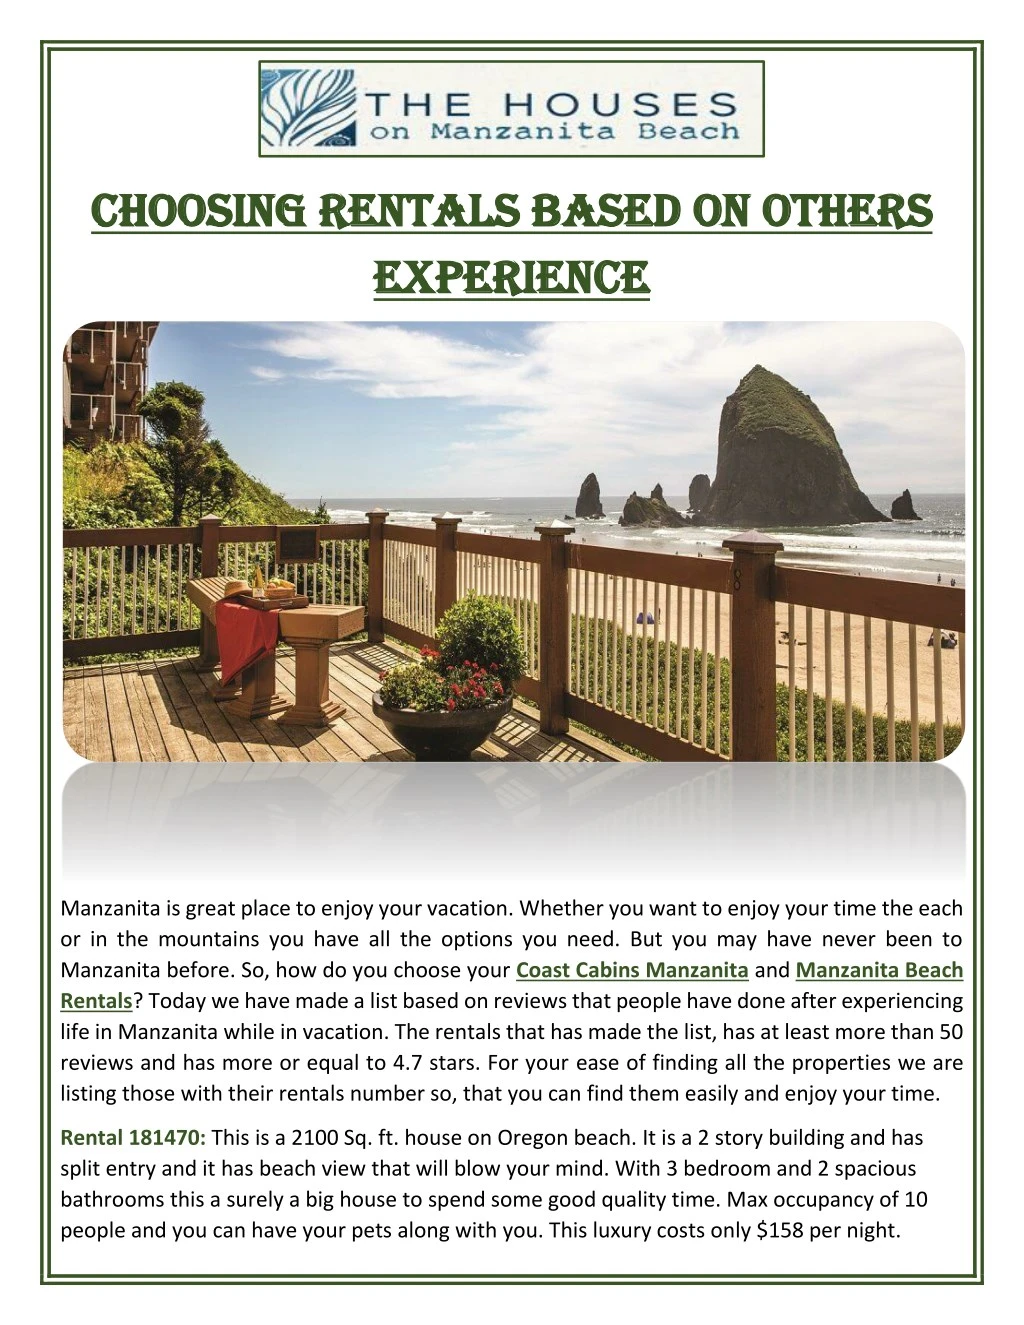 choosing rentals based on others choosing rentals